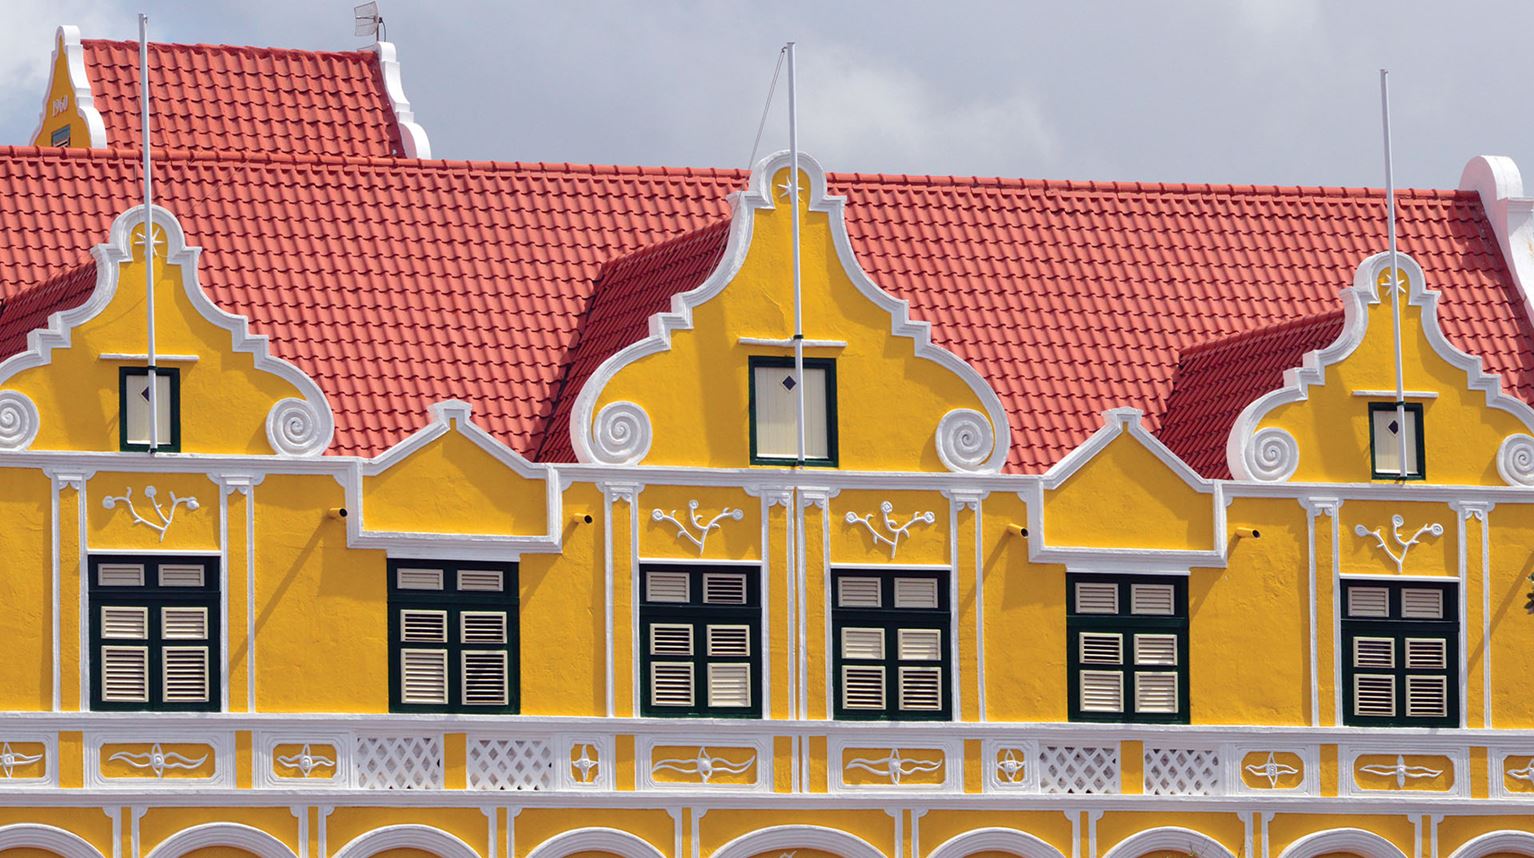 Colourful Spanish colonial architecture in Casco Viejo. 